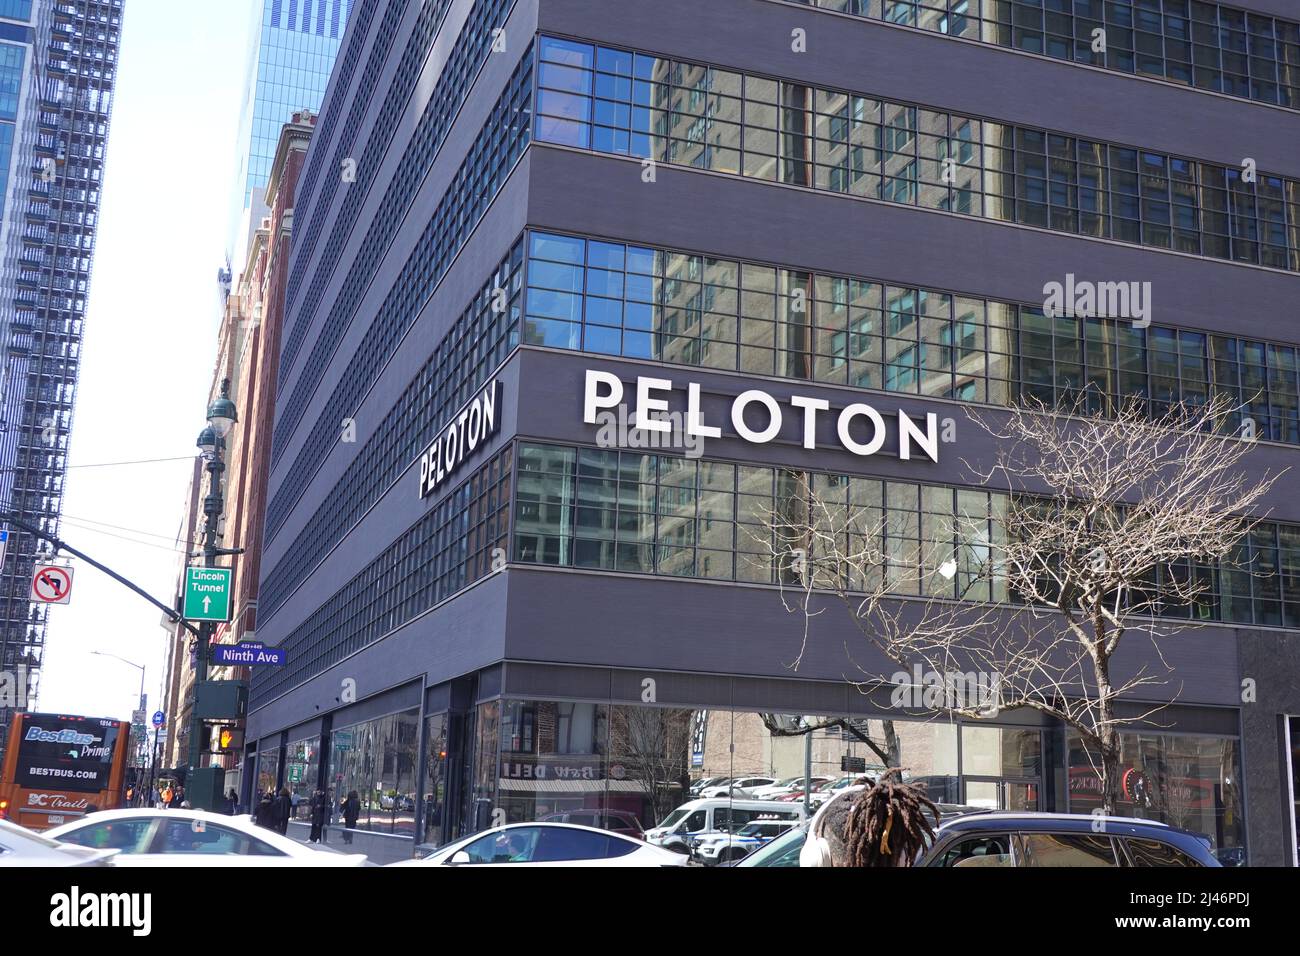 Peloton, siège de New York, Nineth Avenue Manhatten, New York, États-Unis Banque D'Images